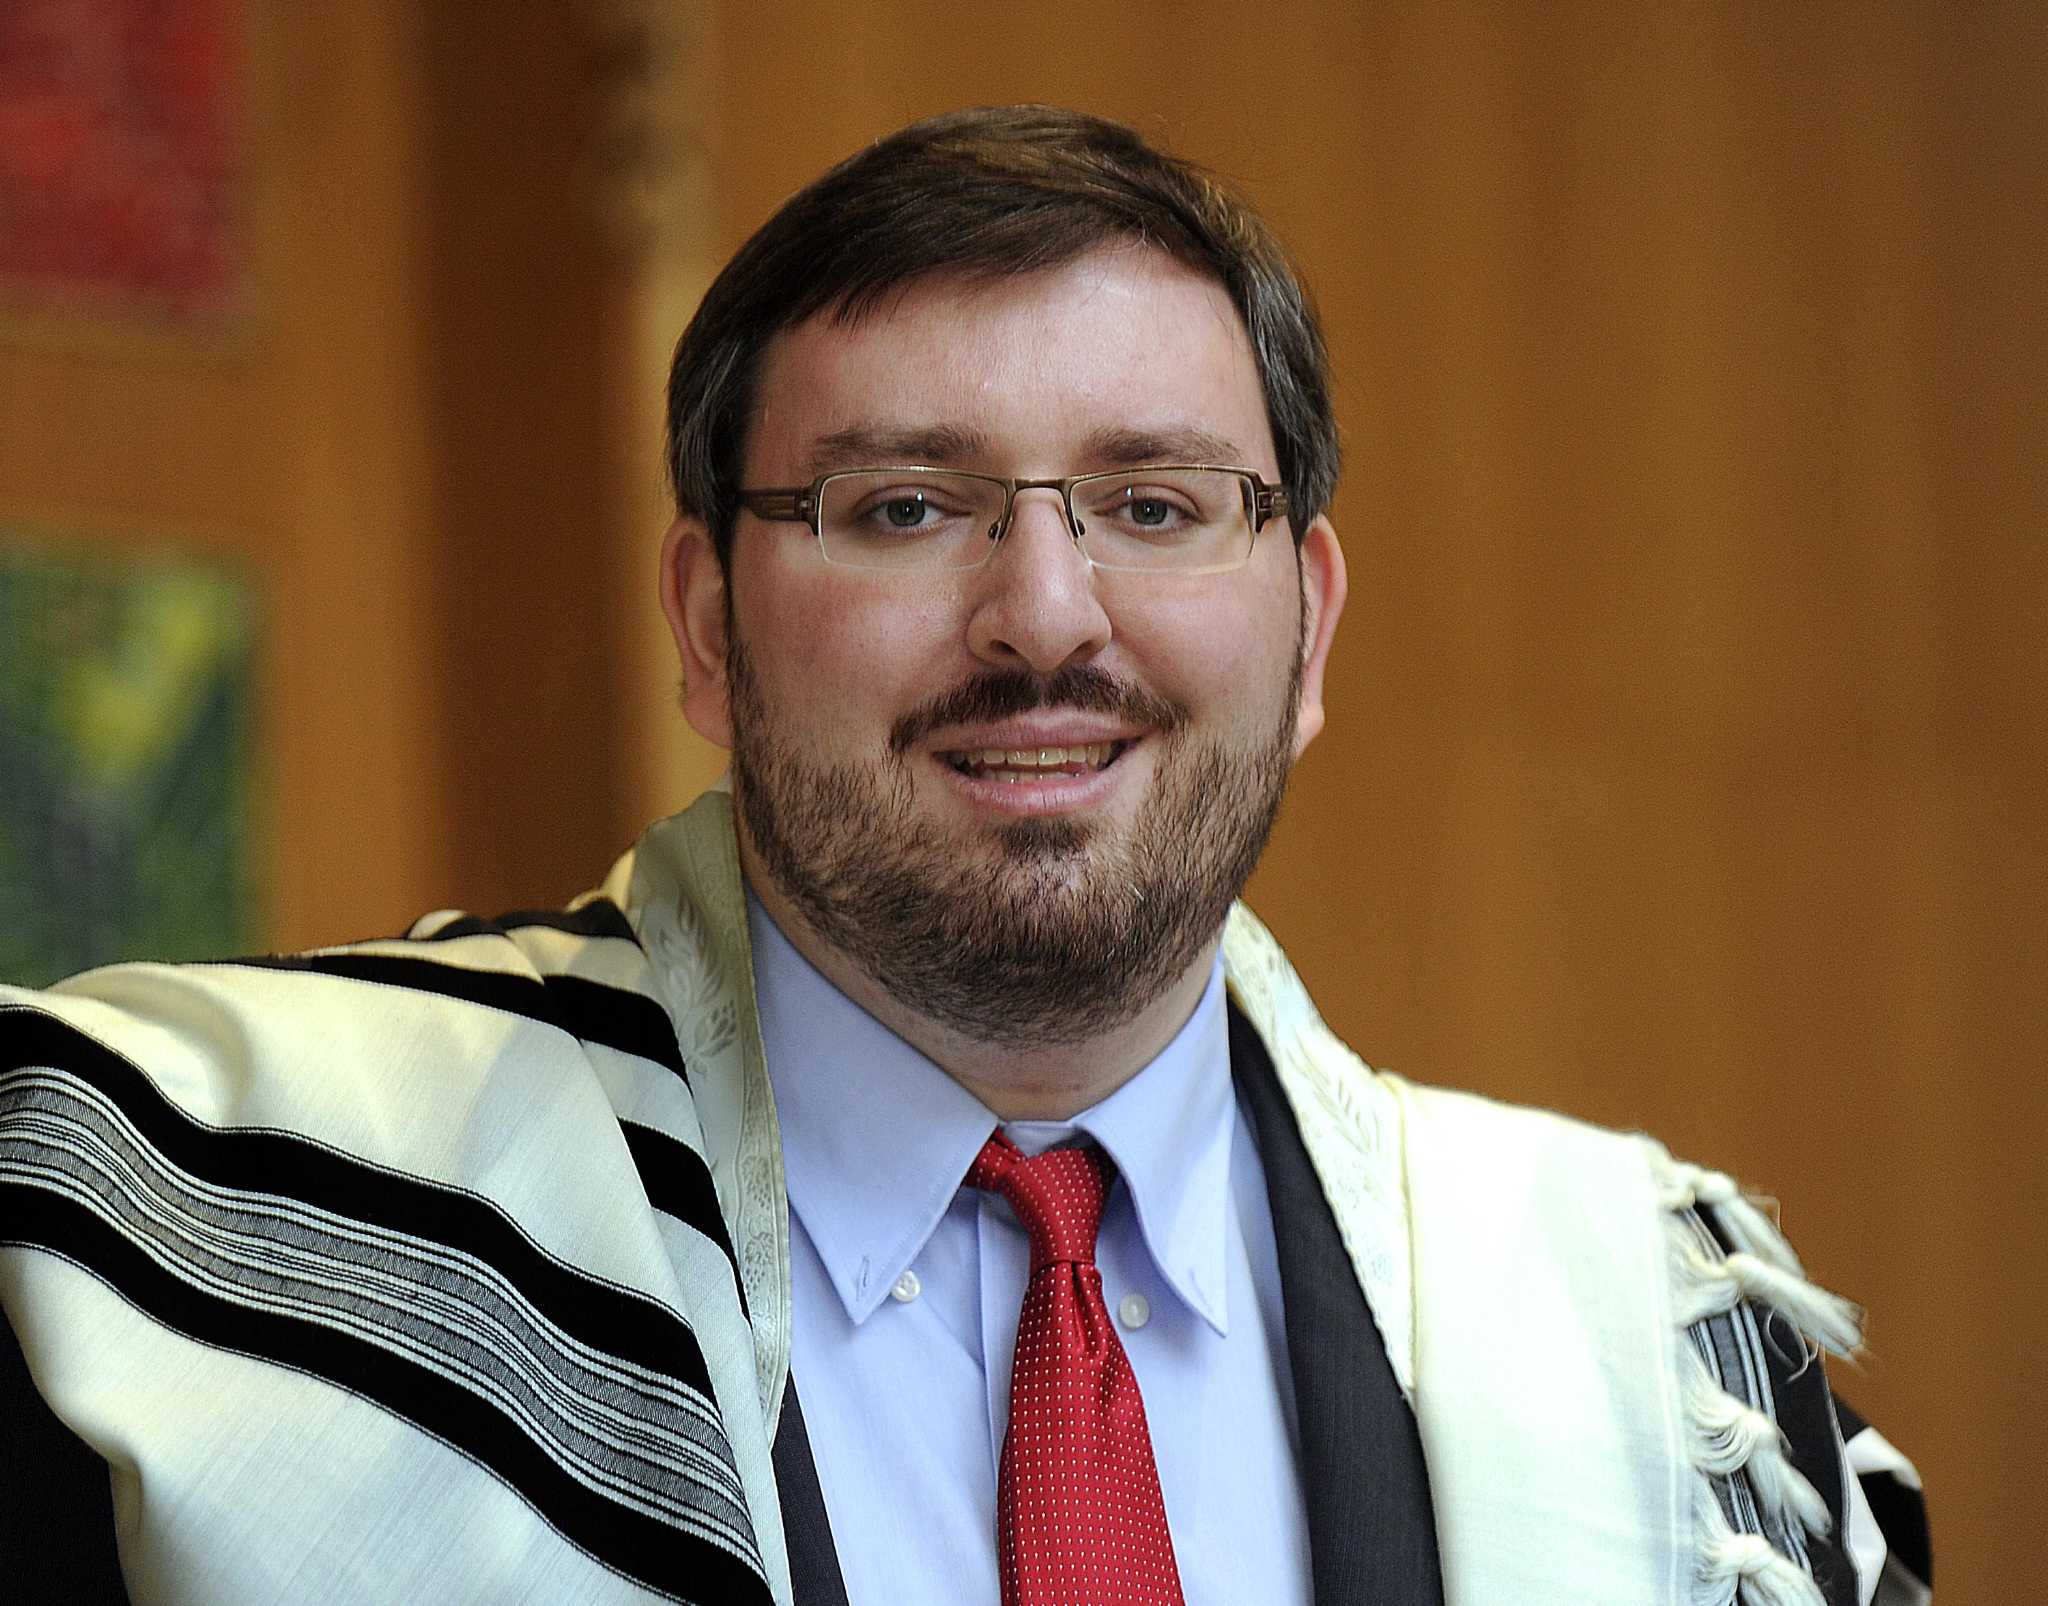 Rabbi Stefan Tiwy